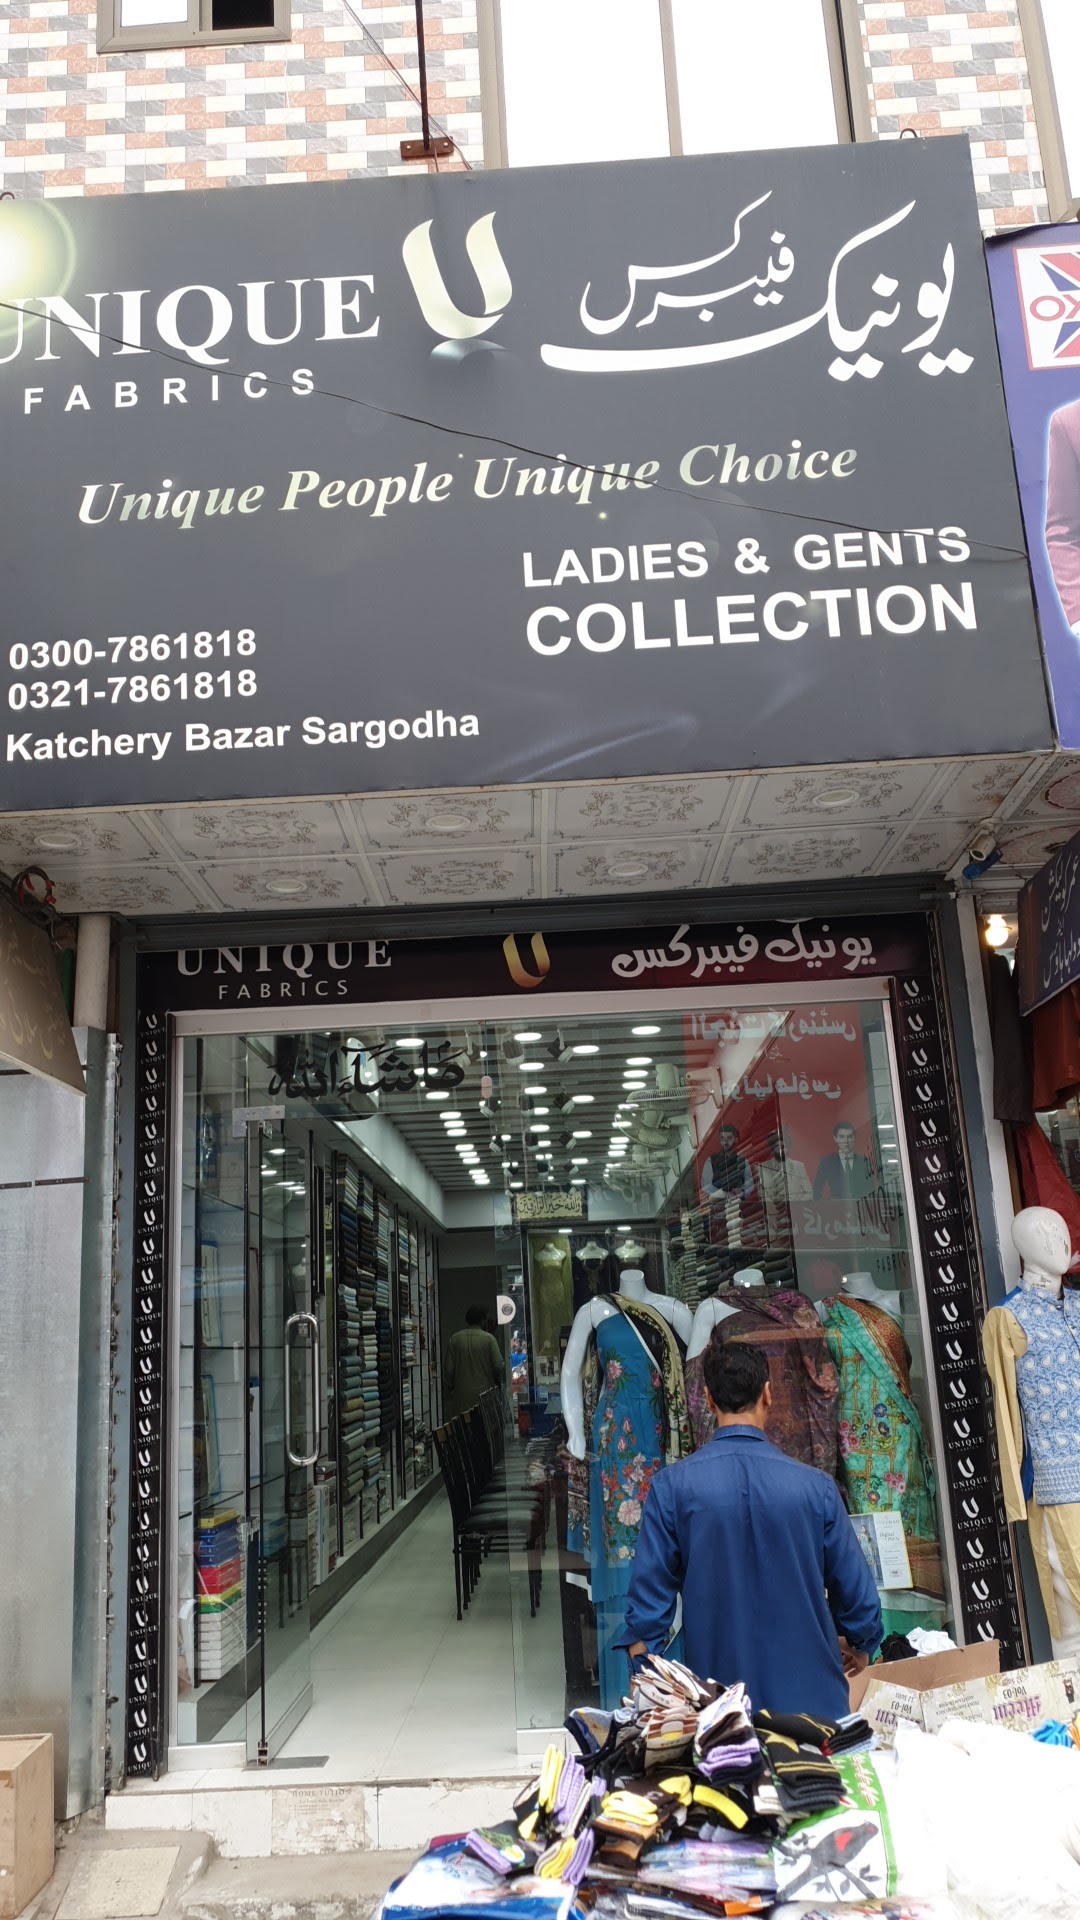 Unique Fabrics katchery bazar